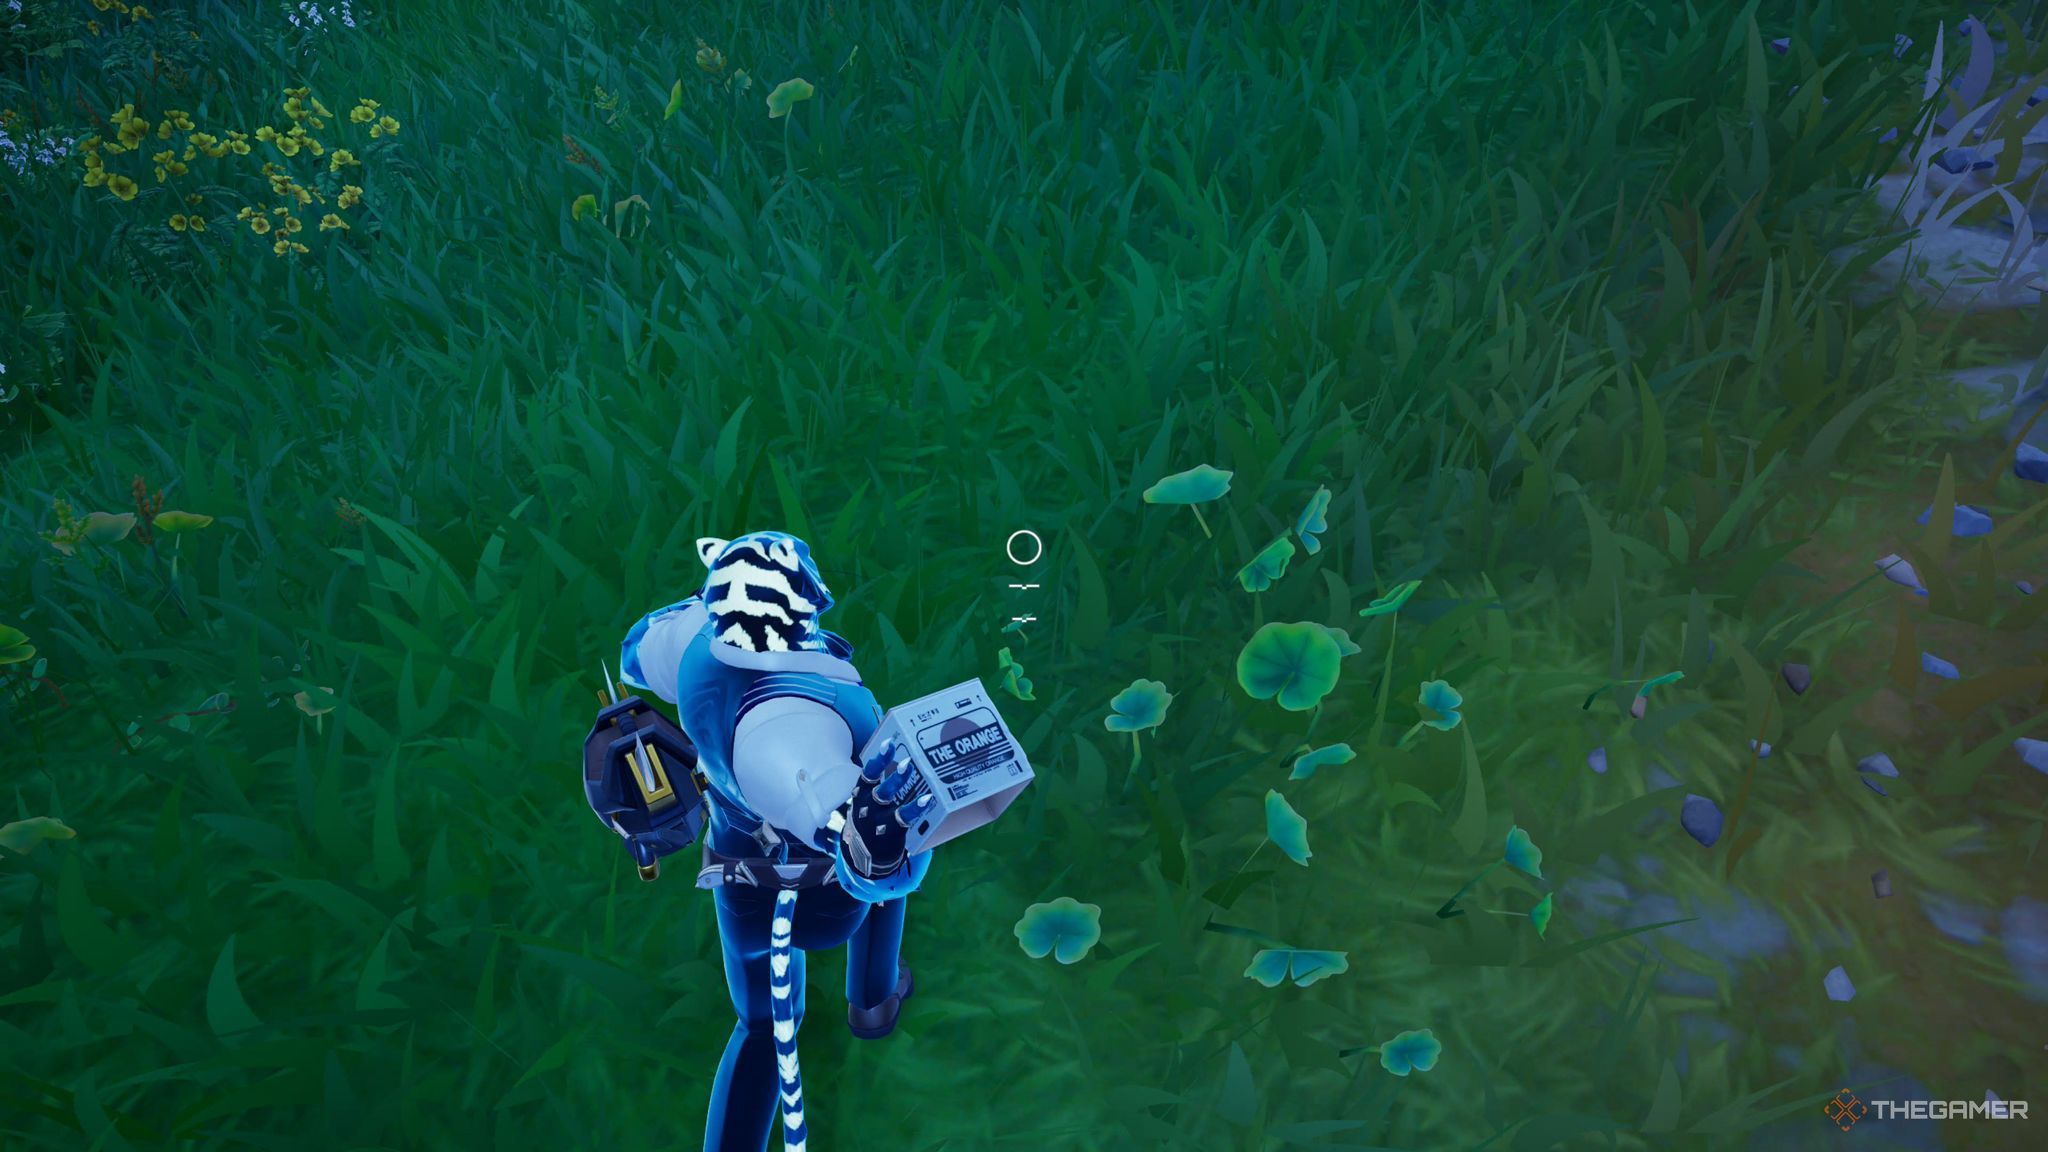 Скриншот из Fortnite, показывающий персонажа игрока в виде бело-черного тигра в костюме, который собирается бросить коробку на траву внизу.